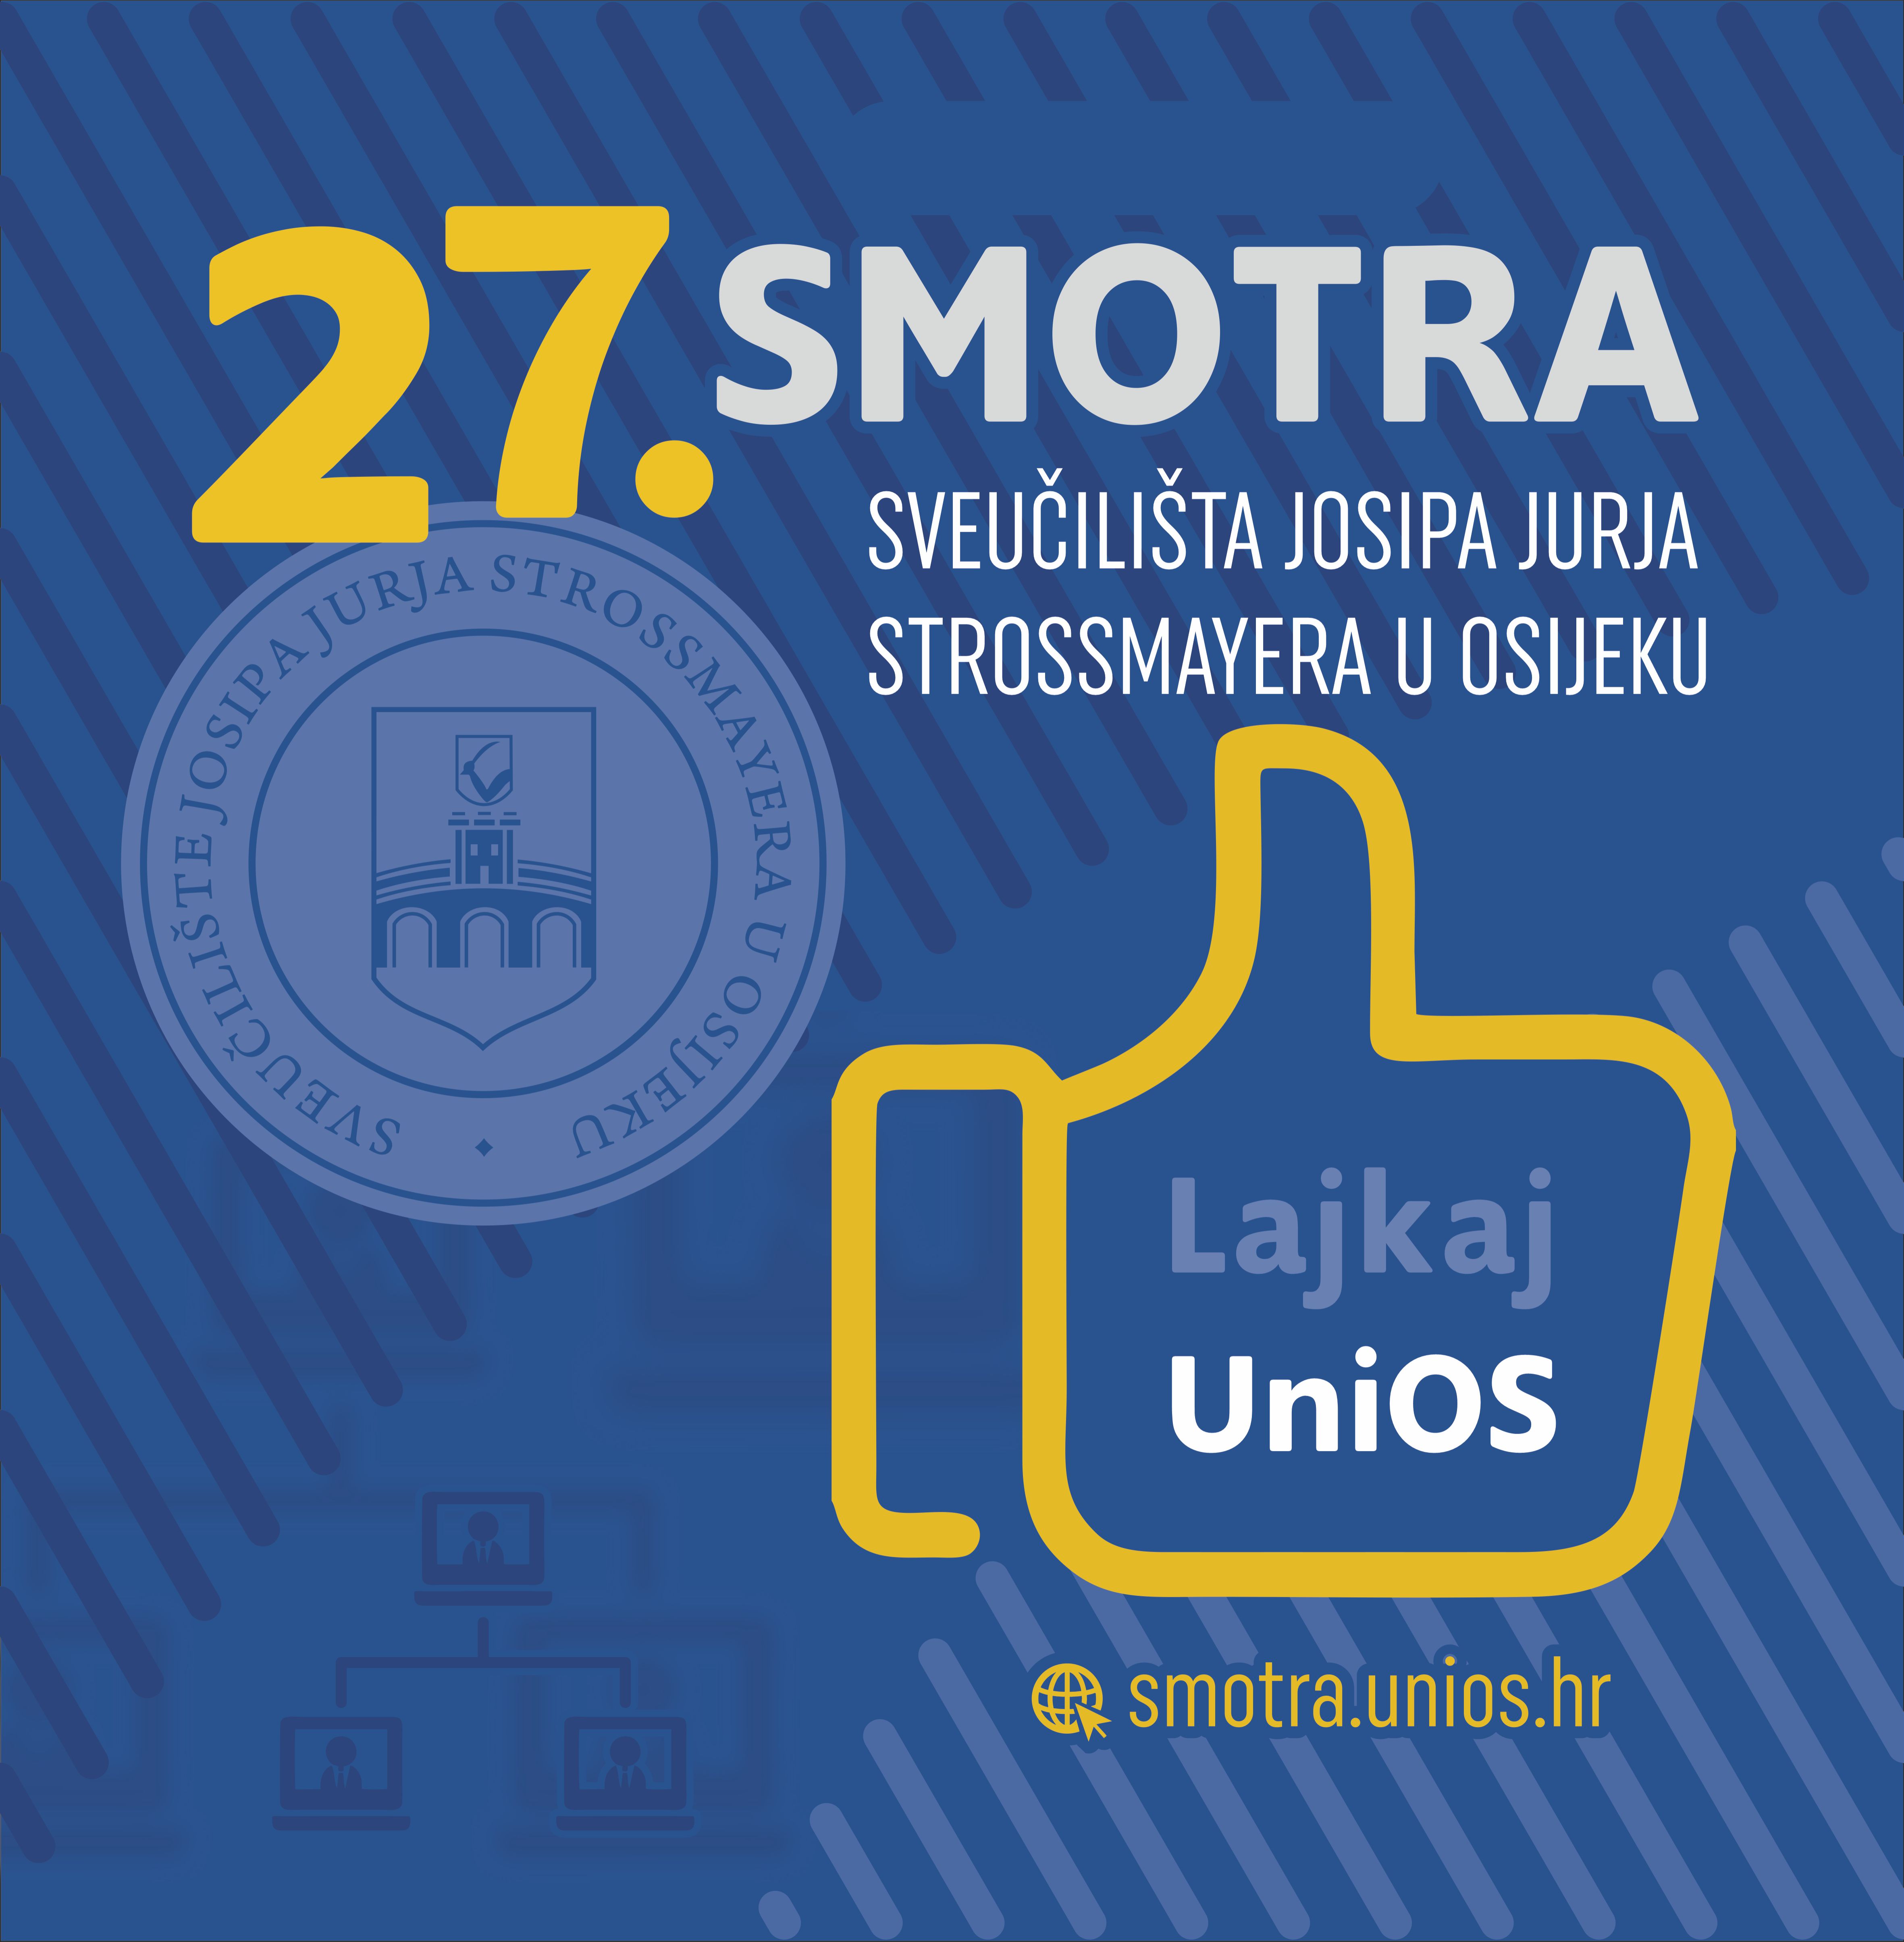 27. Smotra Sveučilišta Josipa Jurja Strossmayera u Osijeku